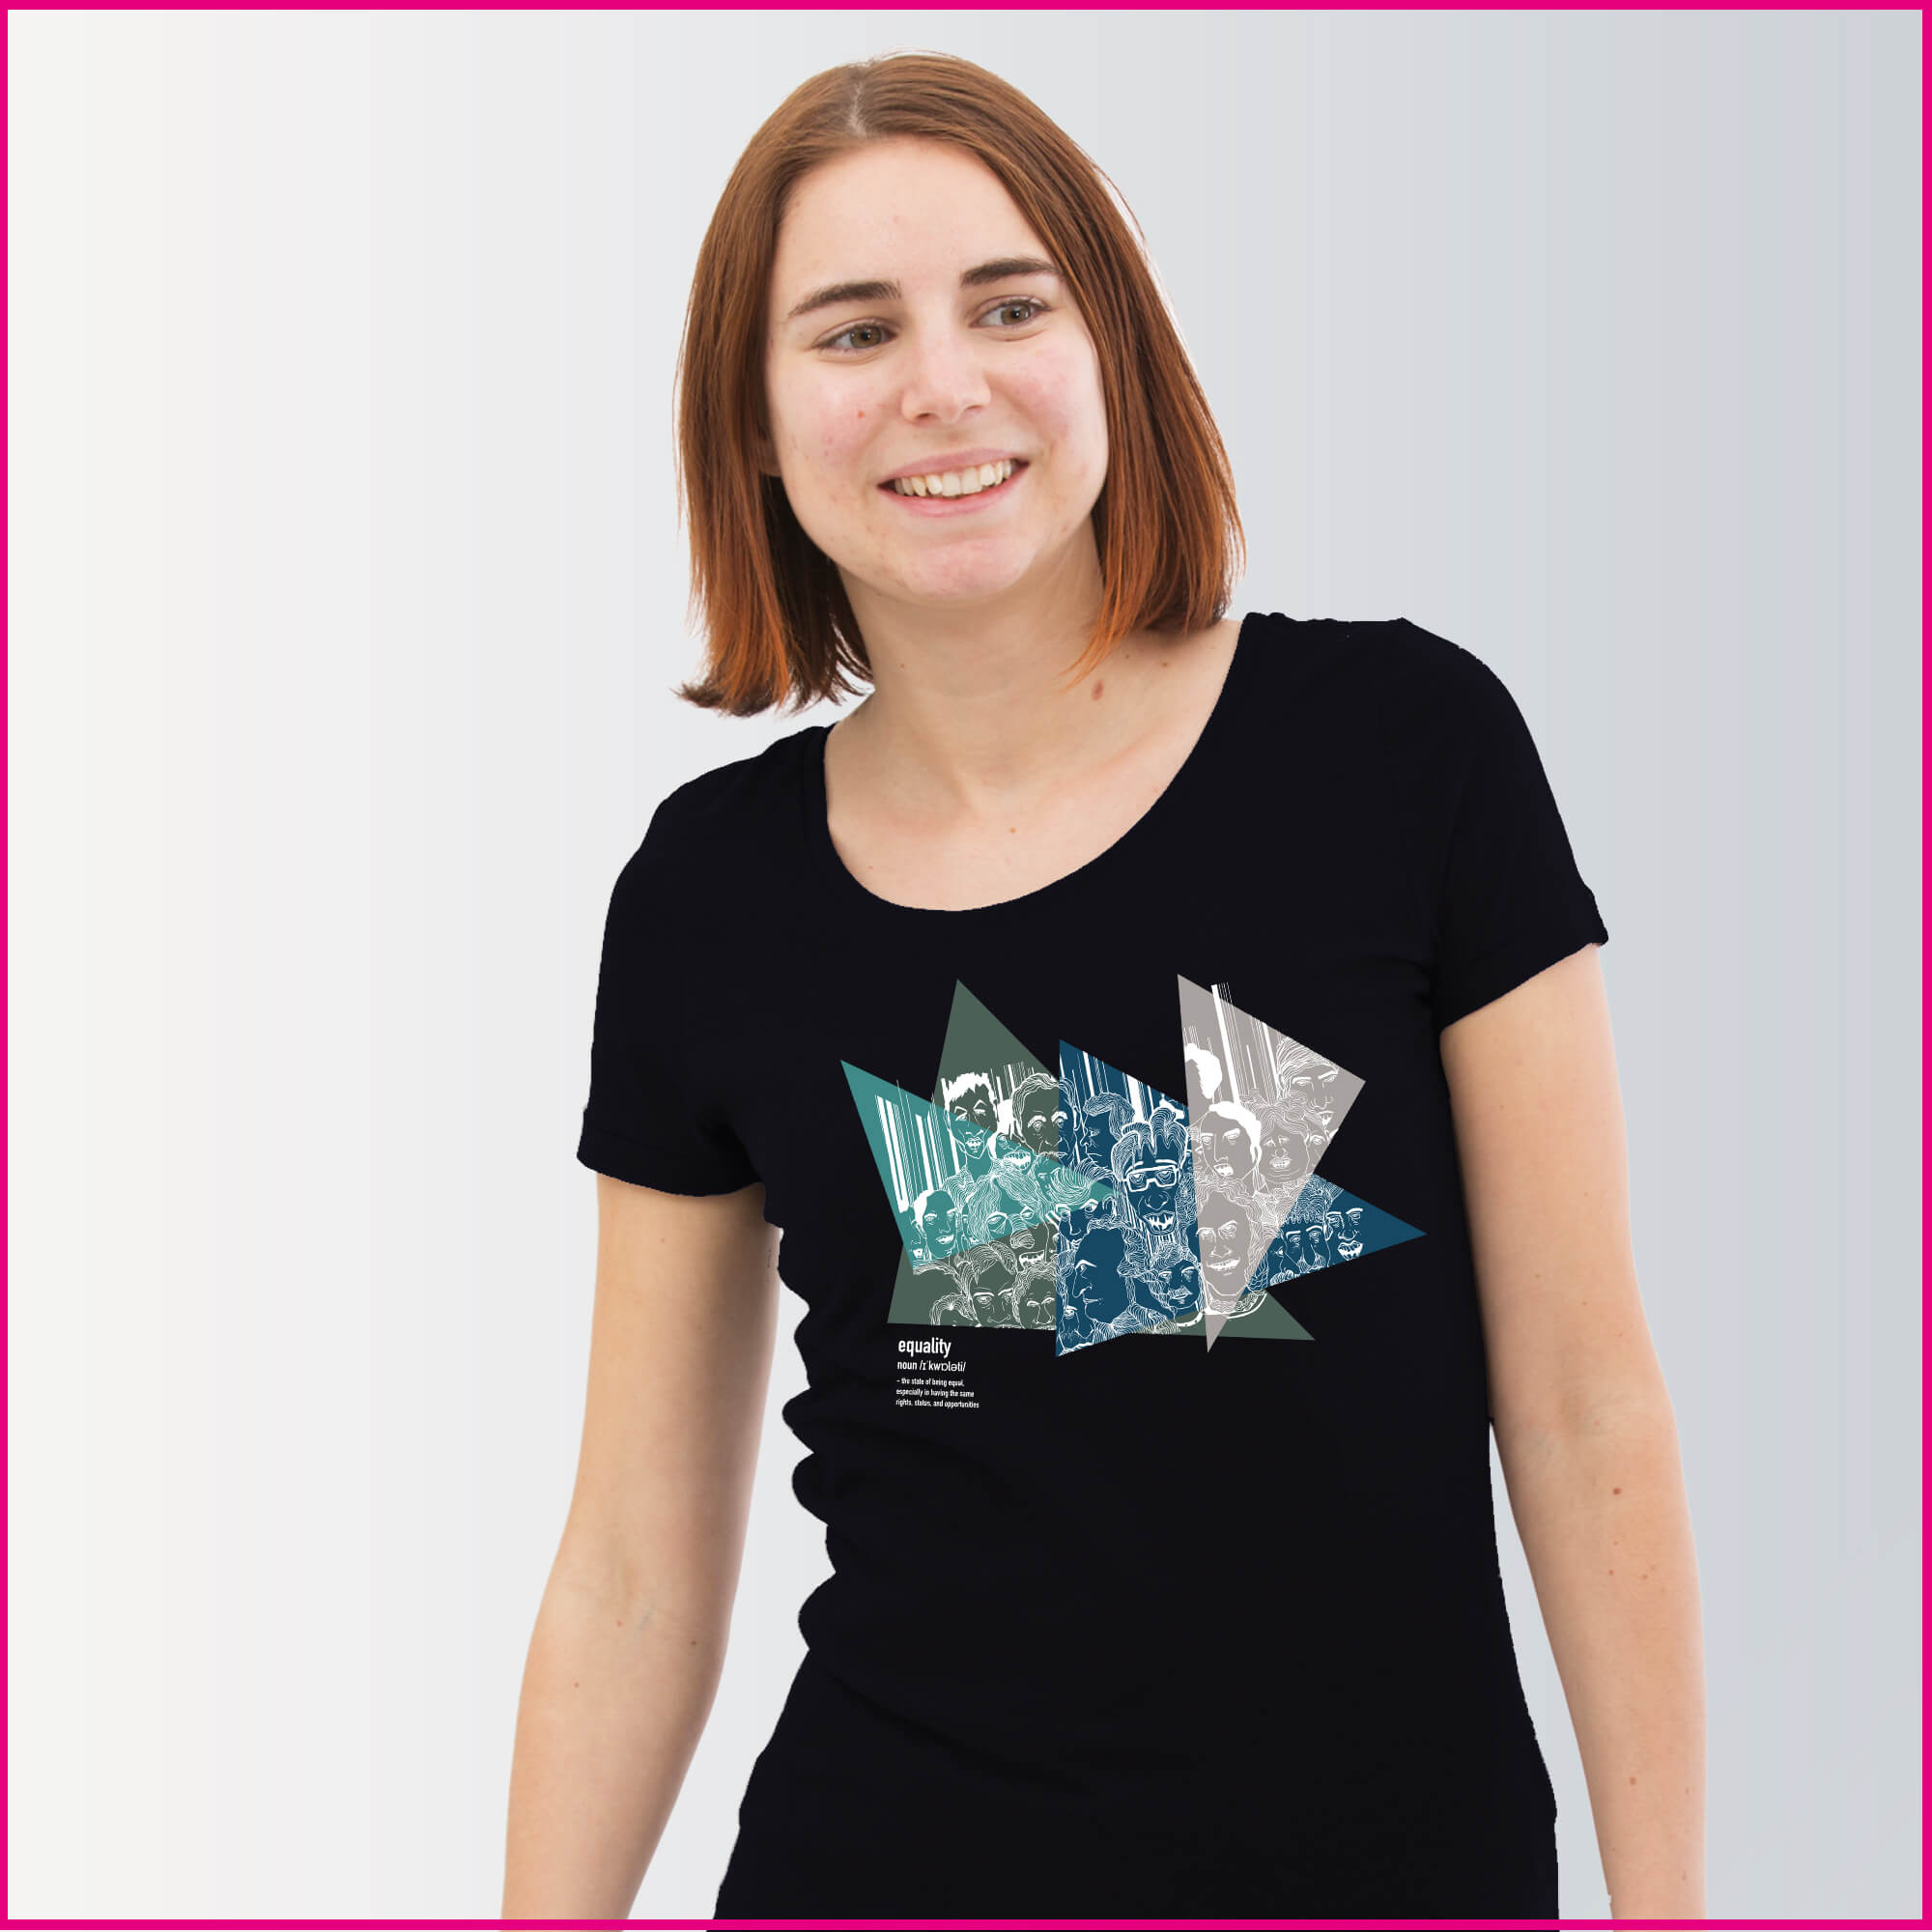 Produktfoto Frauen T-Shirt mit dem Motiv "Equality" von Jörg Rath